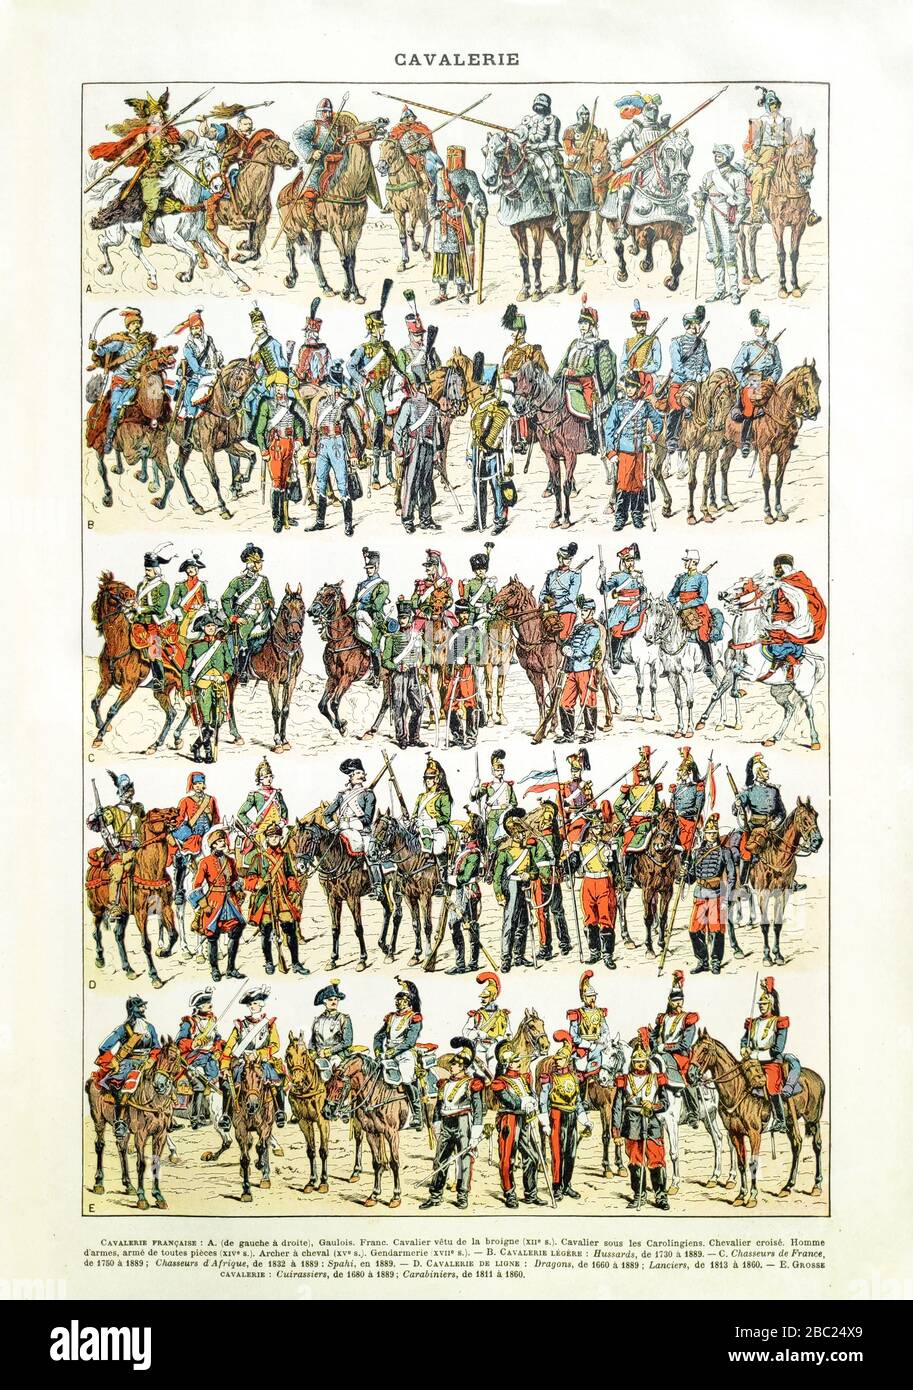 Alte Illustration über die französische Kavallerie von der Gaullerzeit bis zum späten 19. Jahrhundert von Bombled. Stockfoto